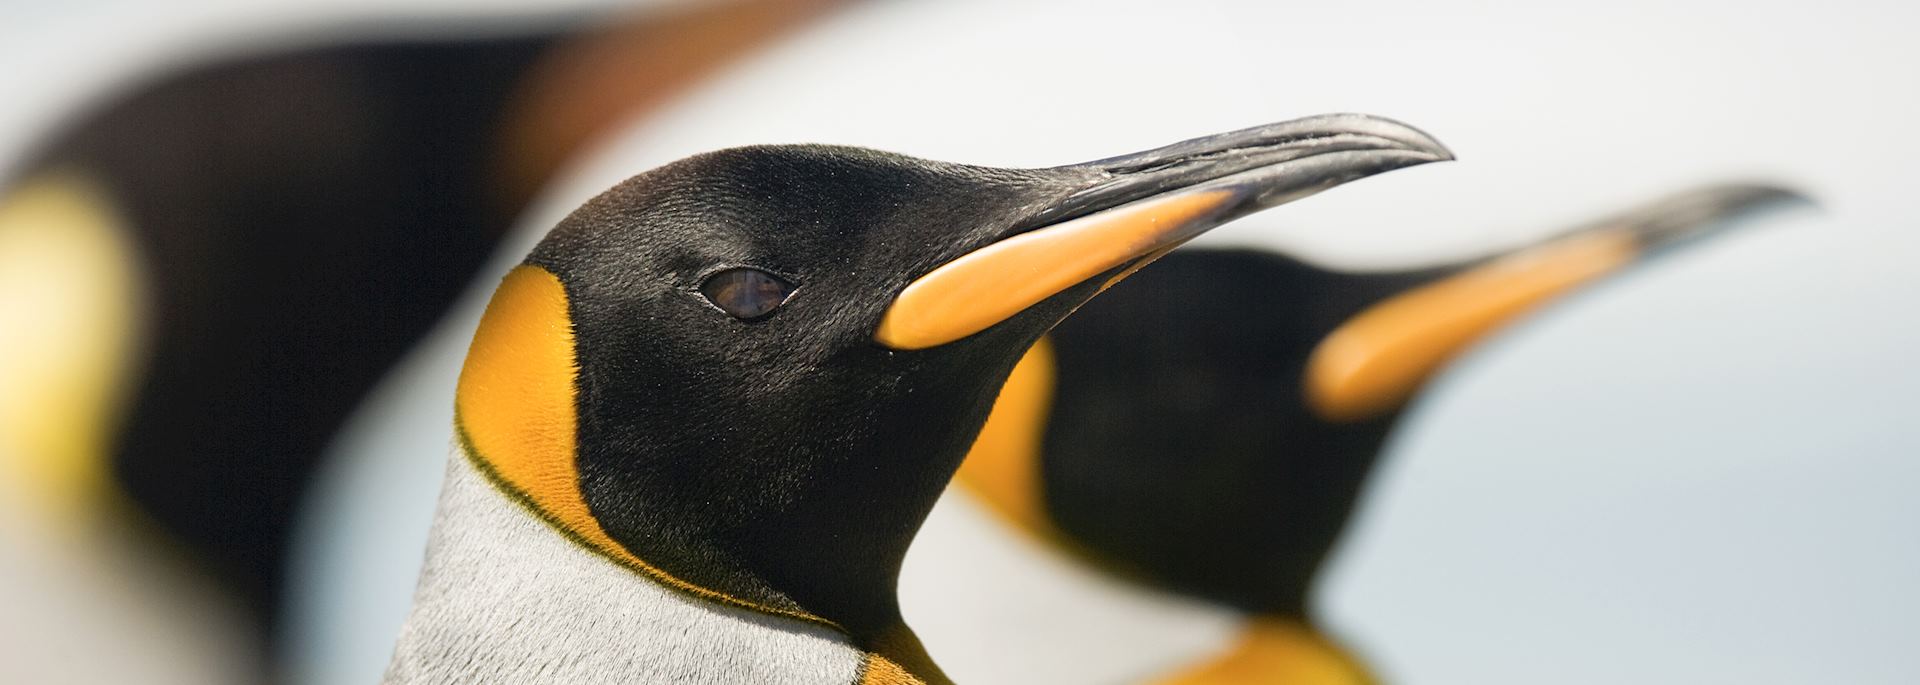 King pengins, Falkland Islands